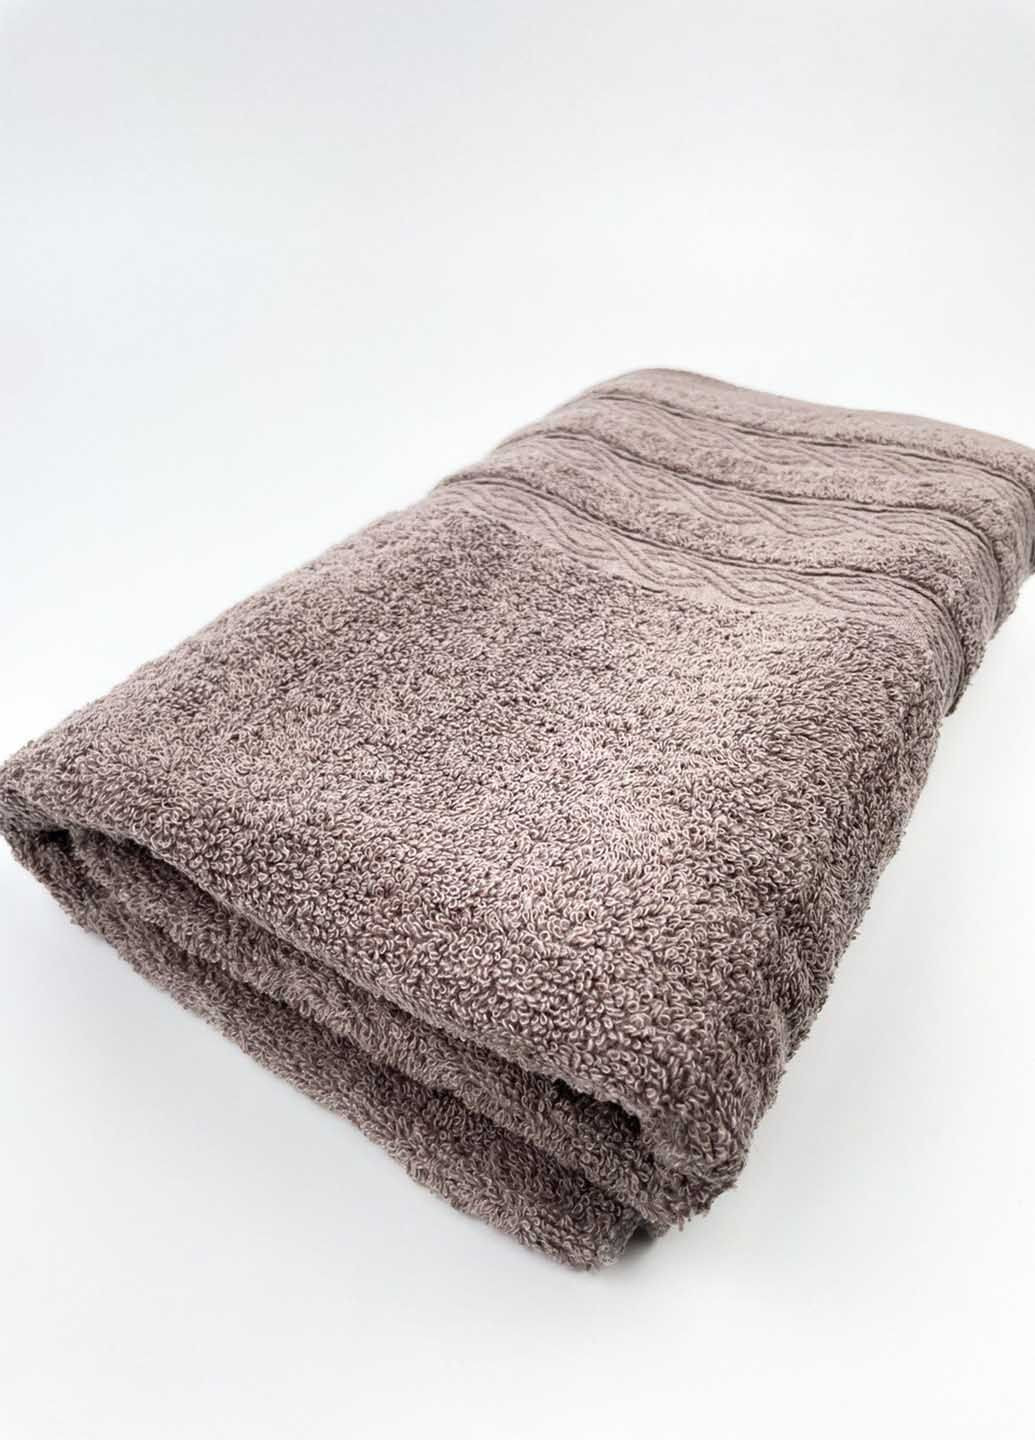 Homedec полотенце банное махровое 140х70 см абстрактный темно-бежевый производство - Турция